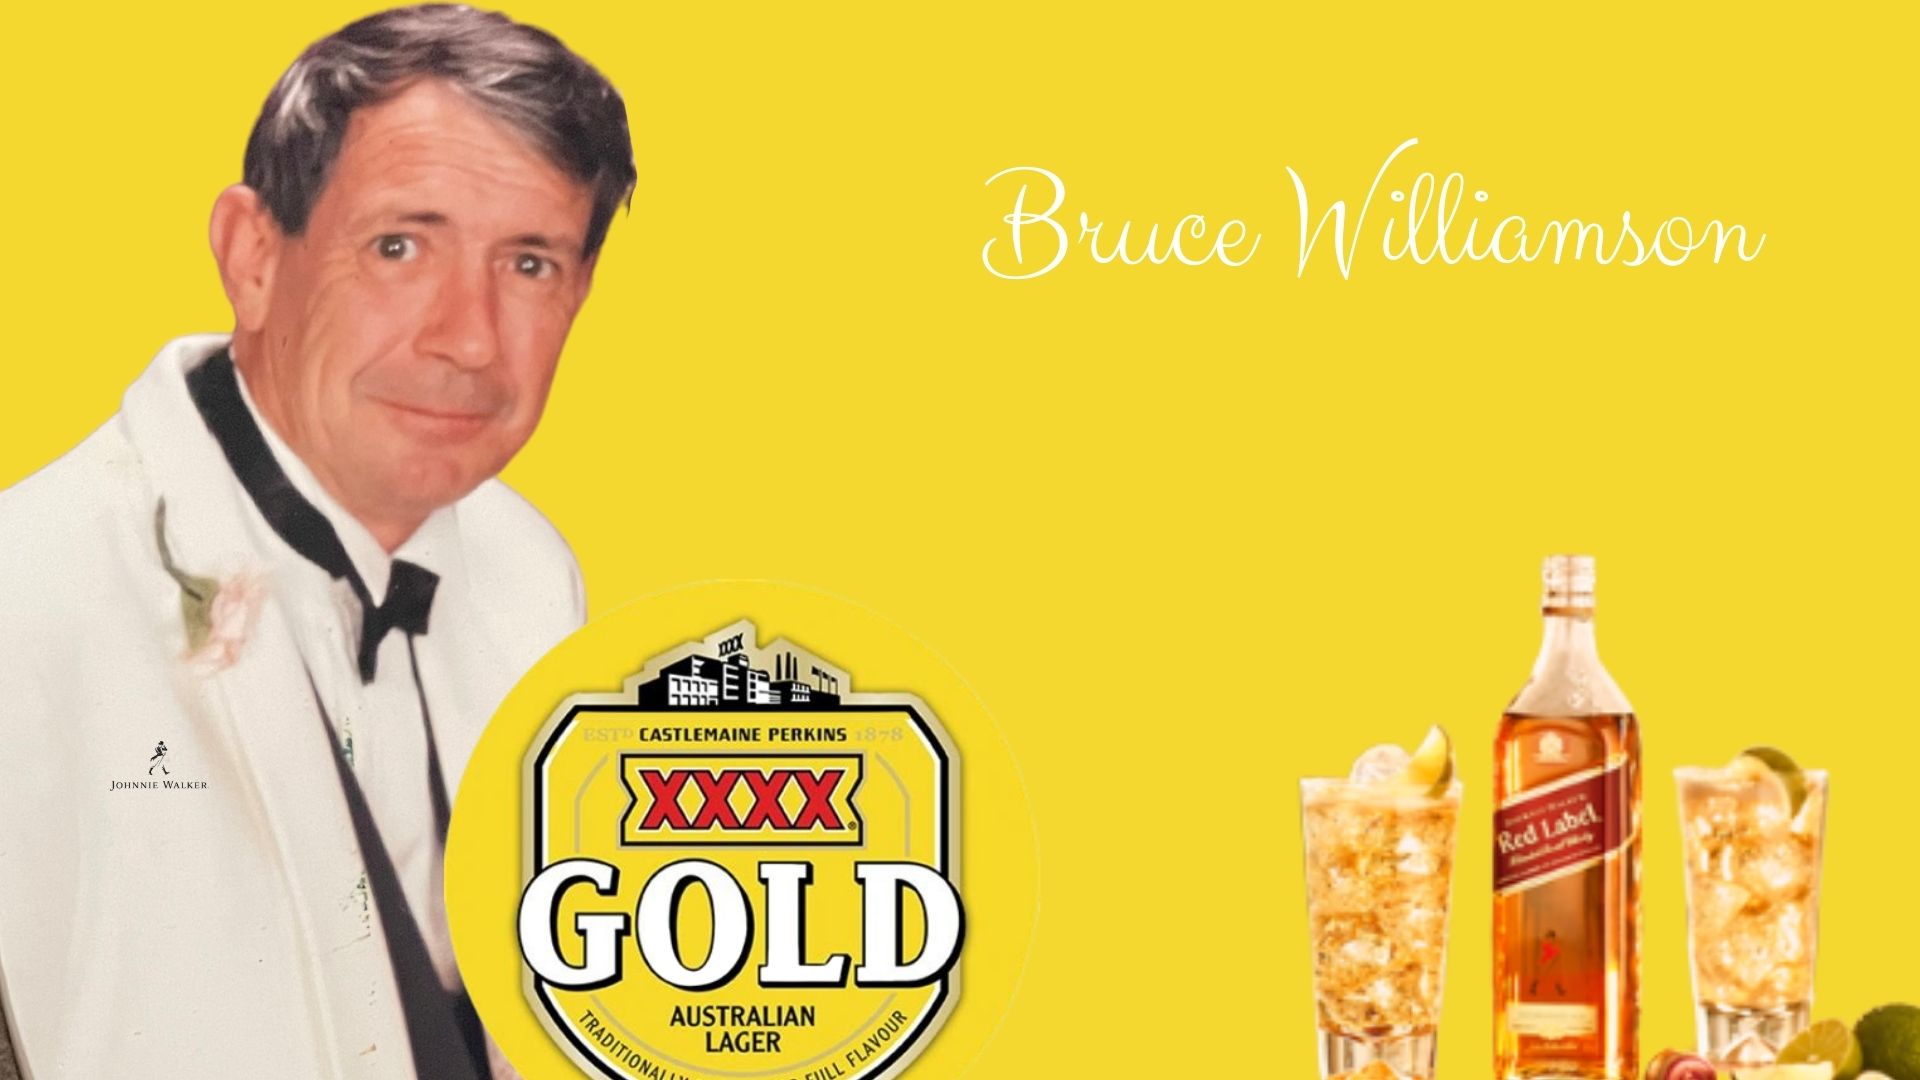 Bruce Williamson